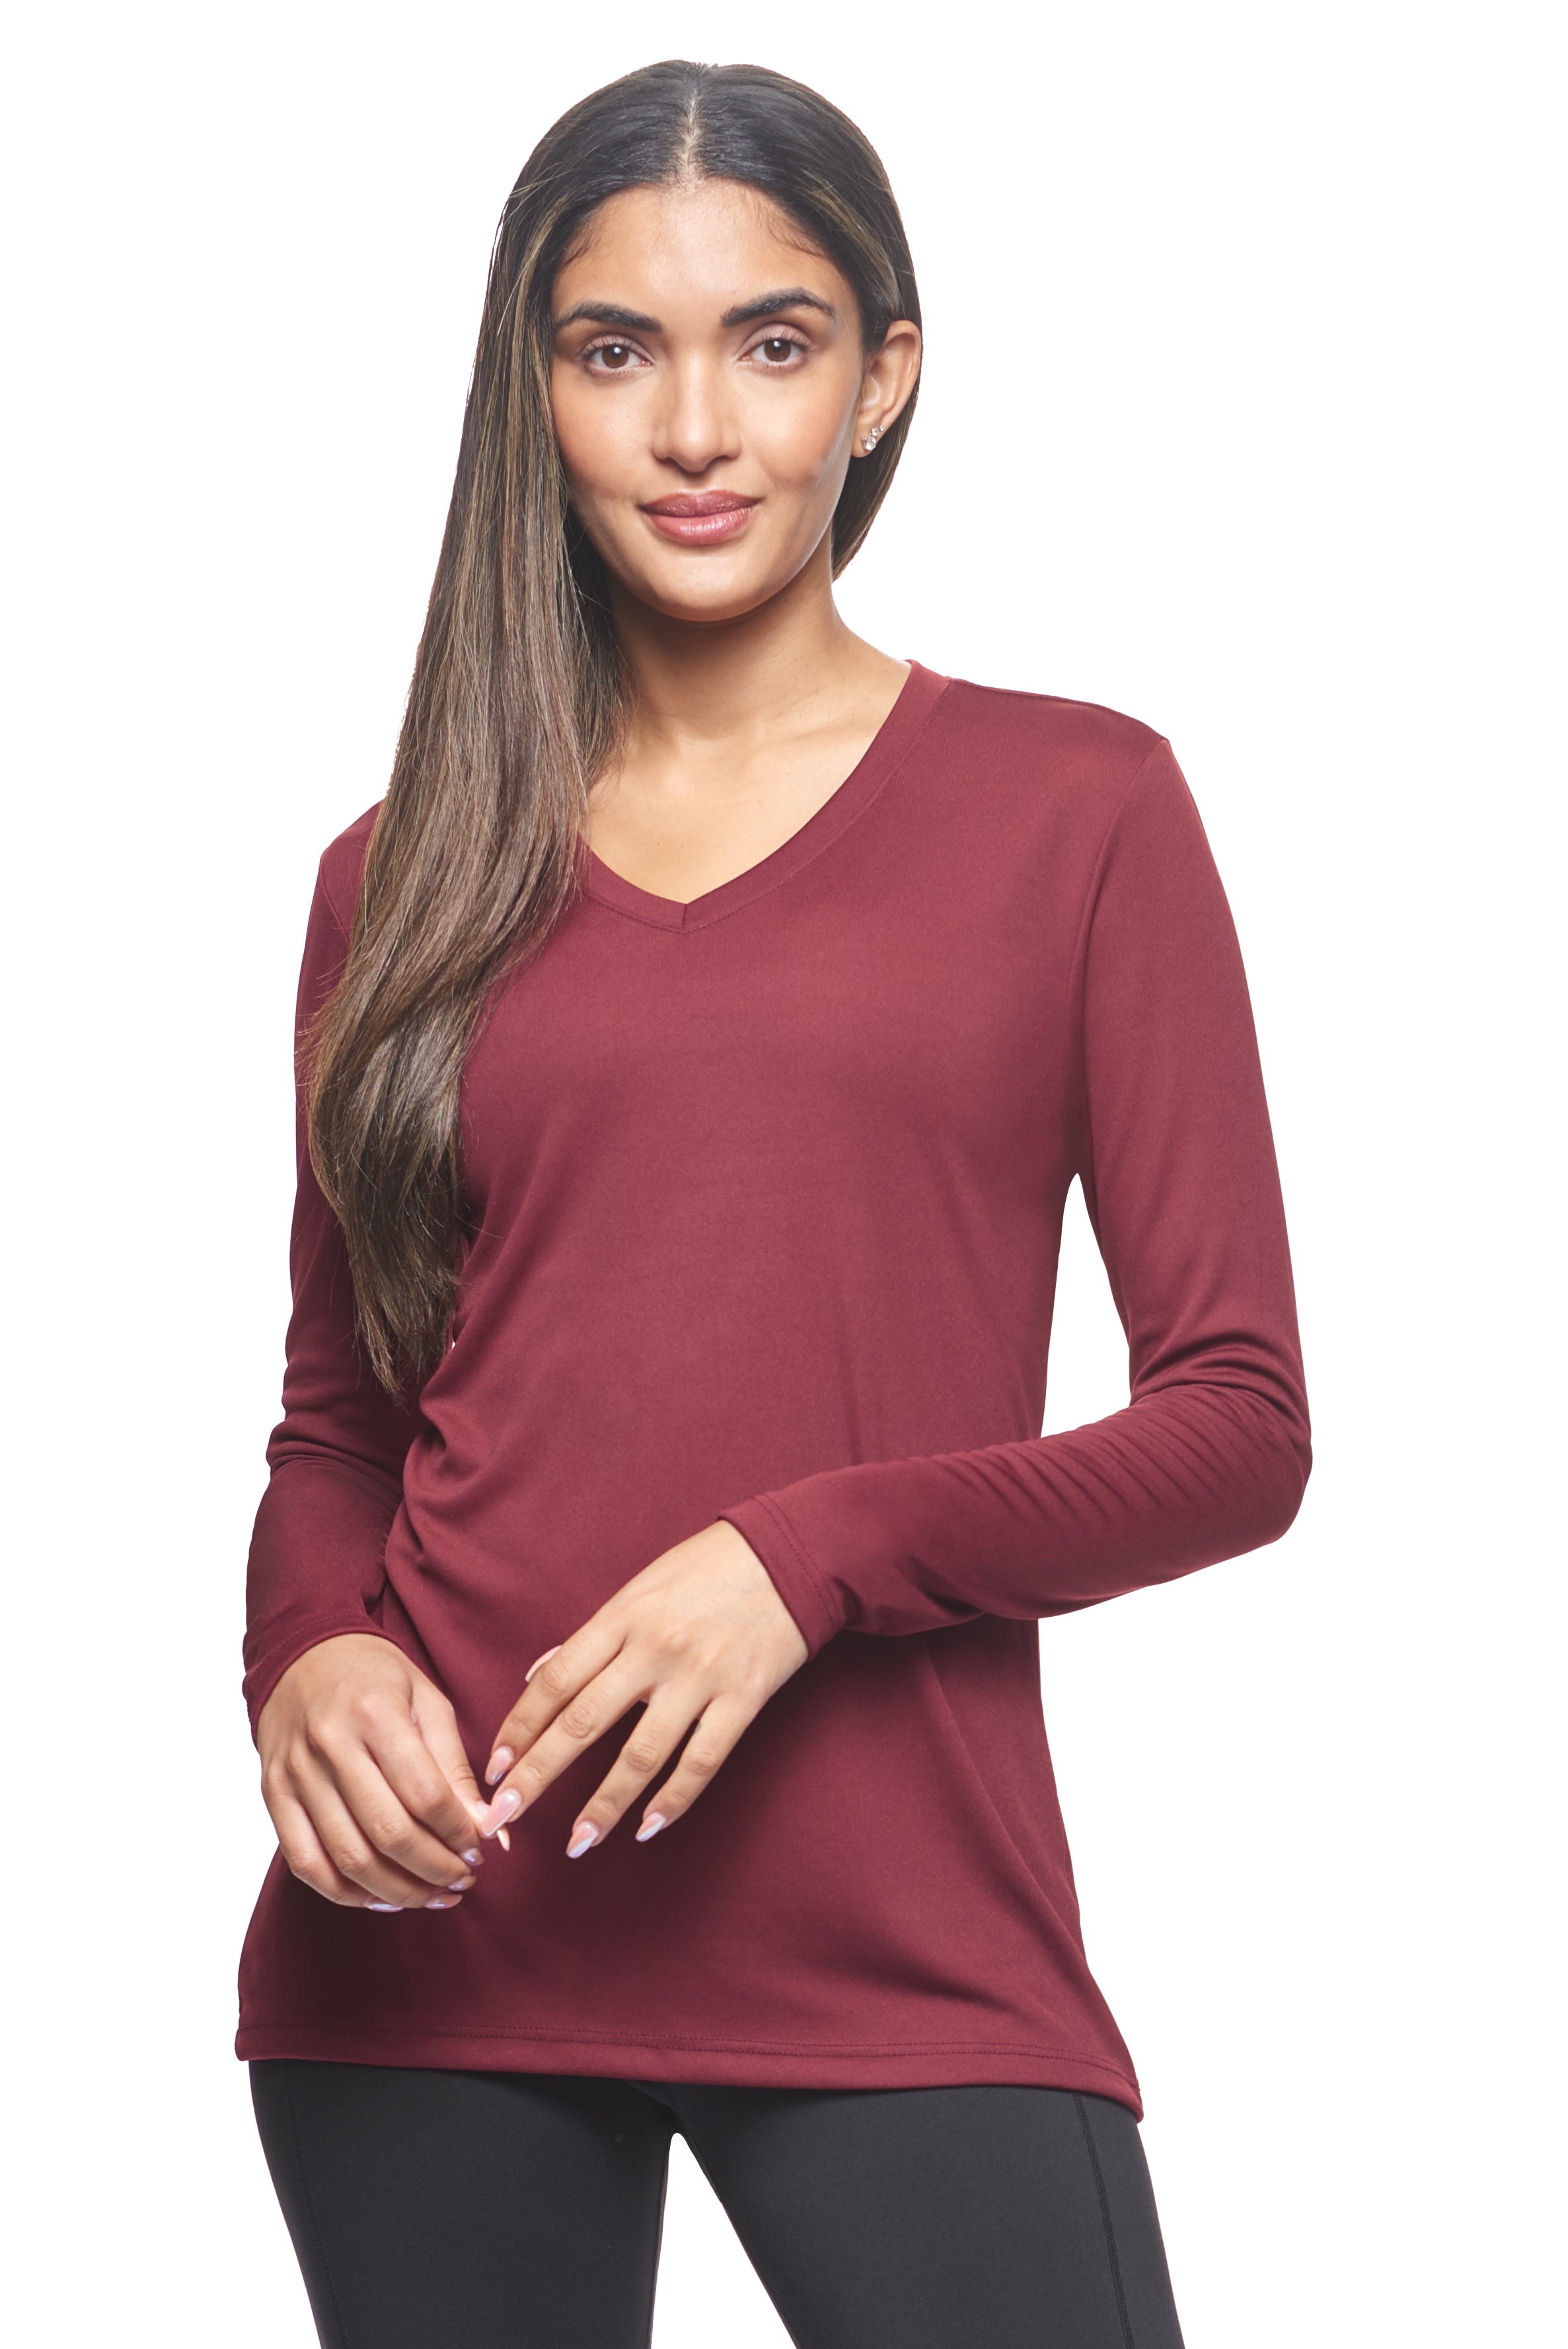 Women's DriMax V-Neck Long Sleeve Expert T-Shirt